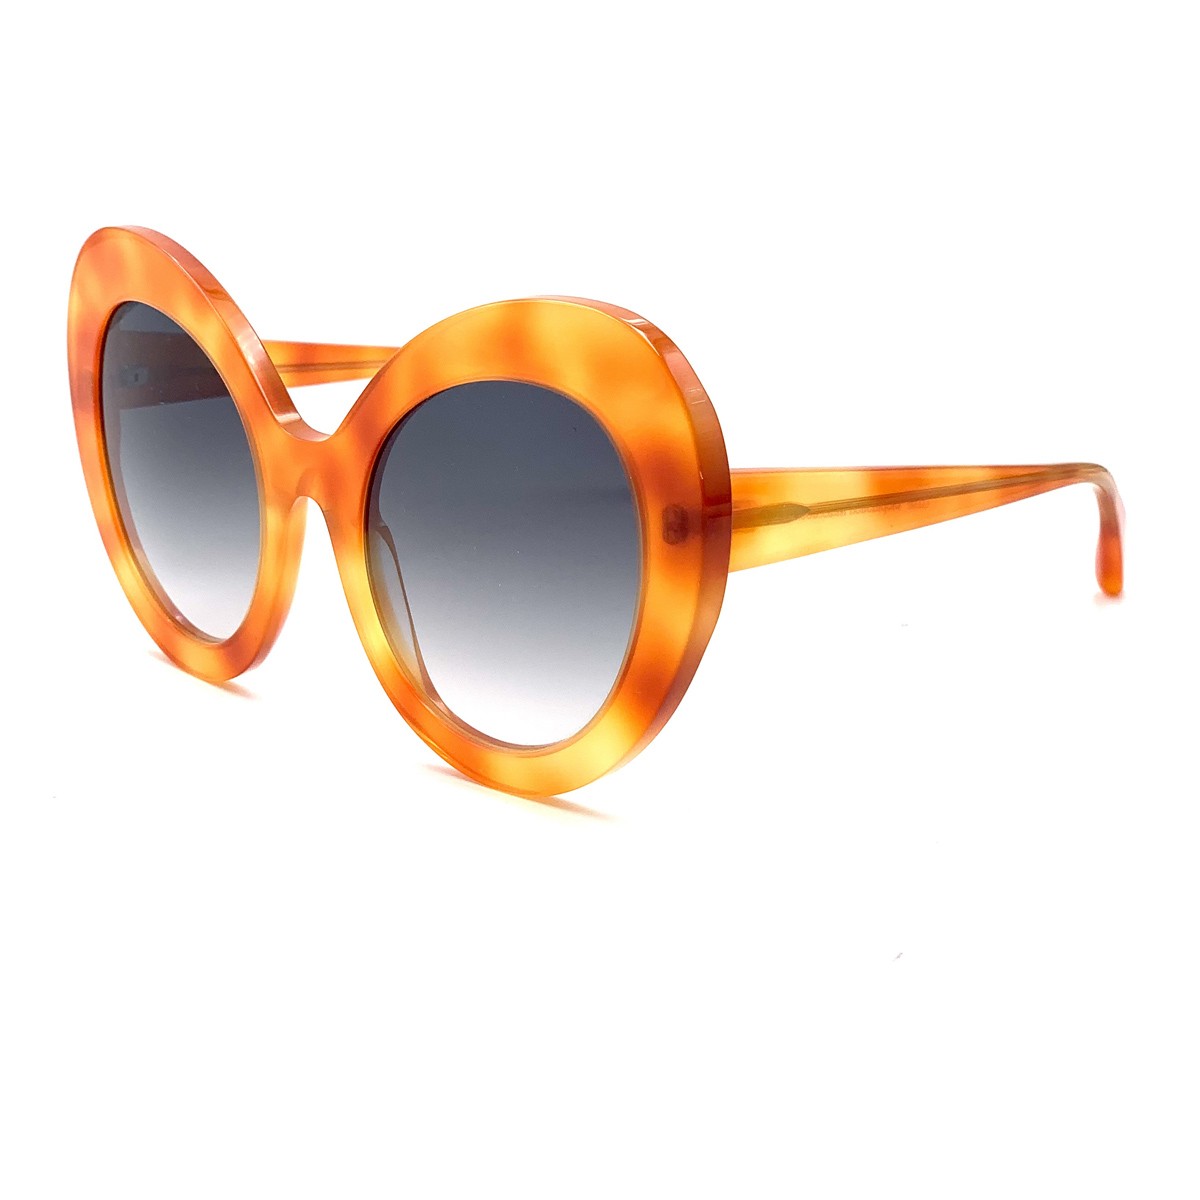 Rte DES SALINS 233 | Women's sunglasses